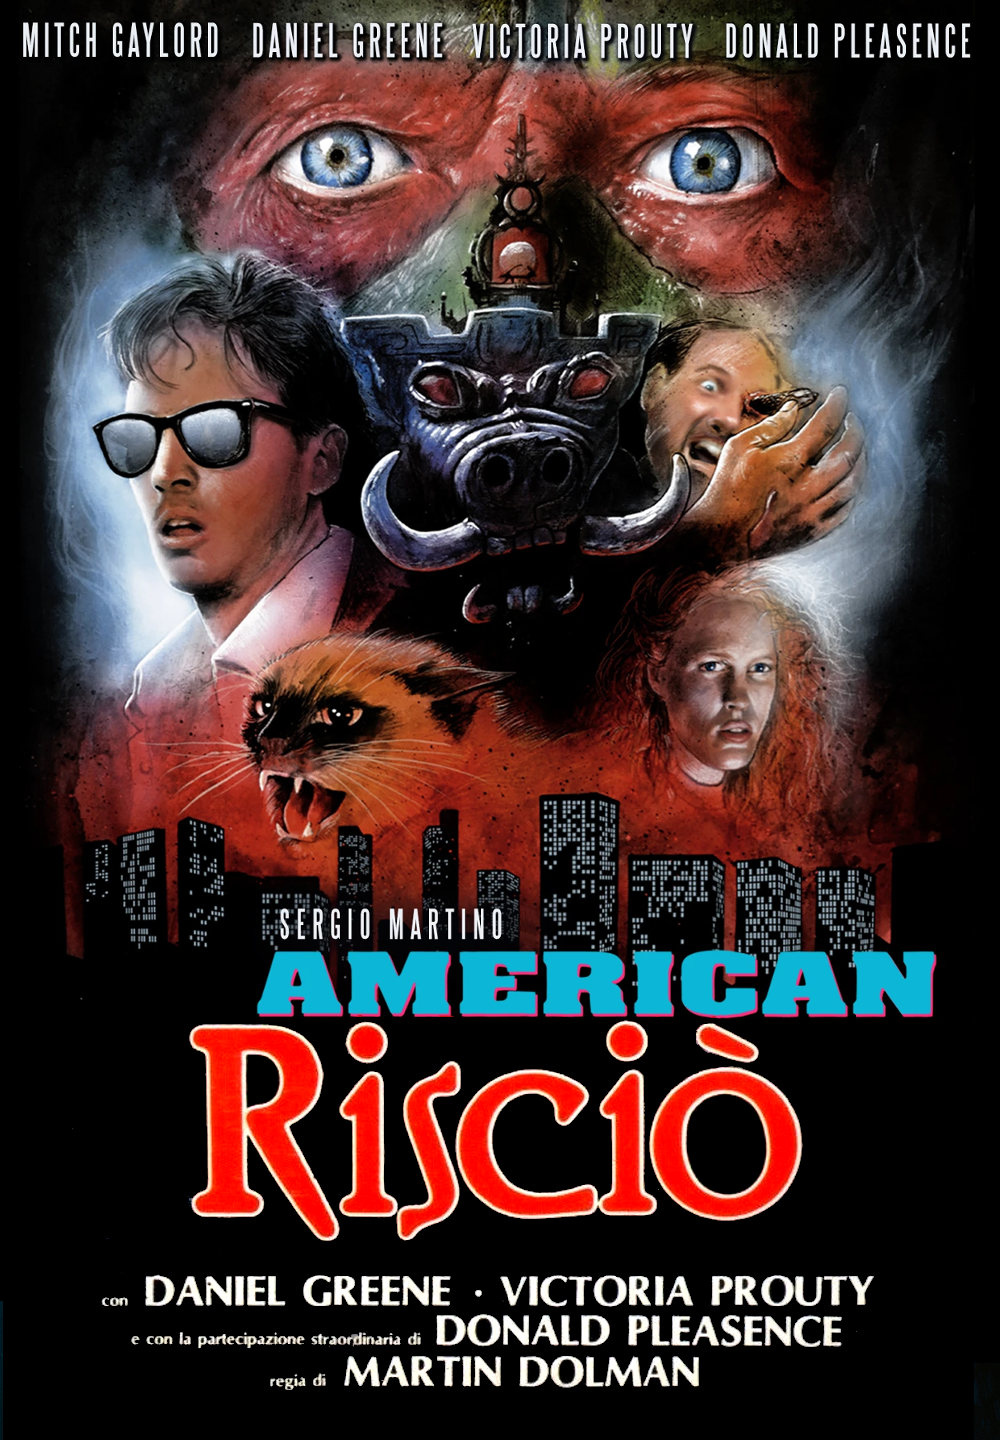 American risciò [HD] (1990)